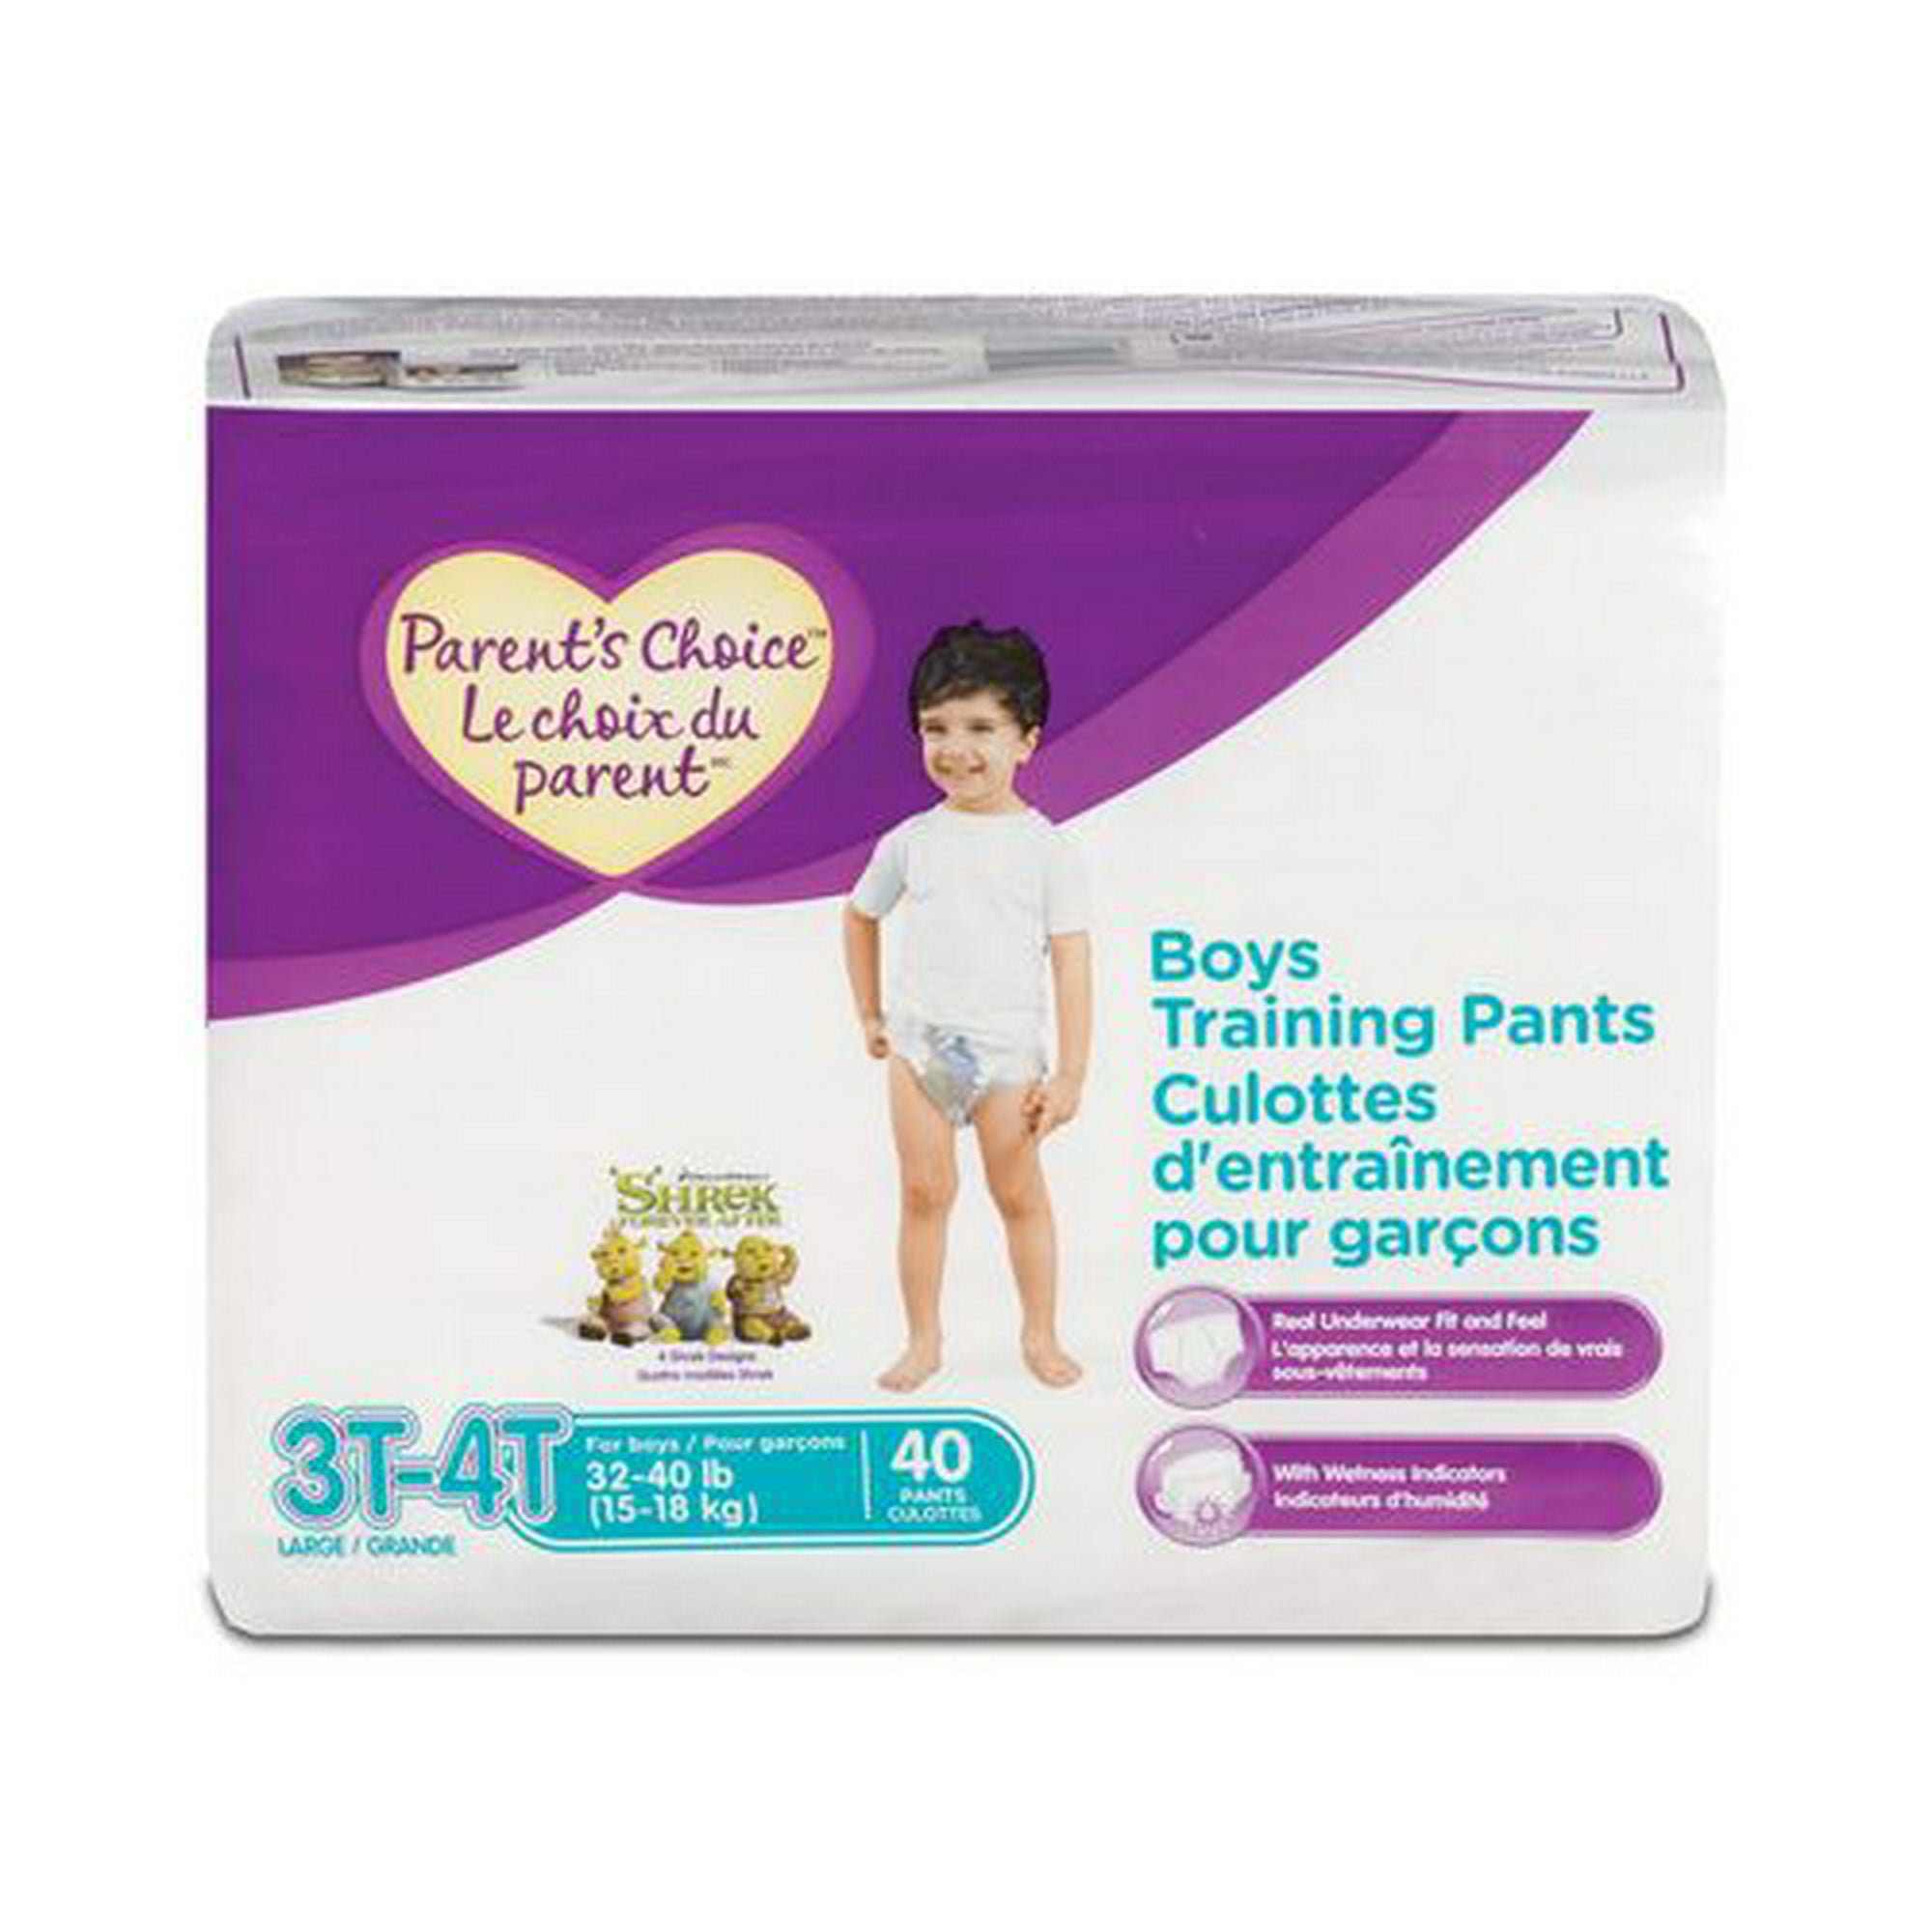 Parent's Choice Boys Training Pants 3T-4T 40's